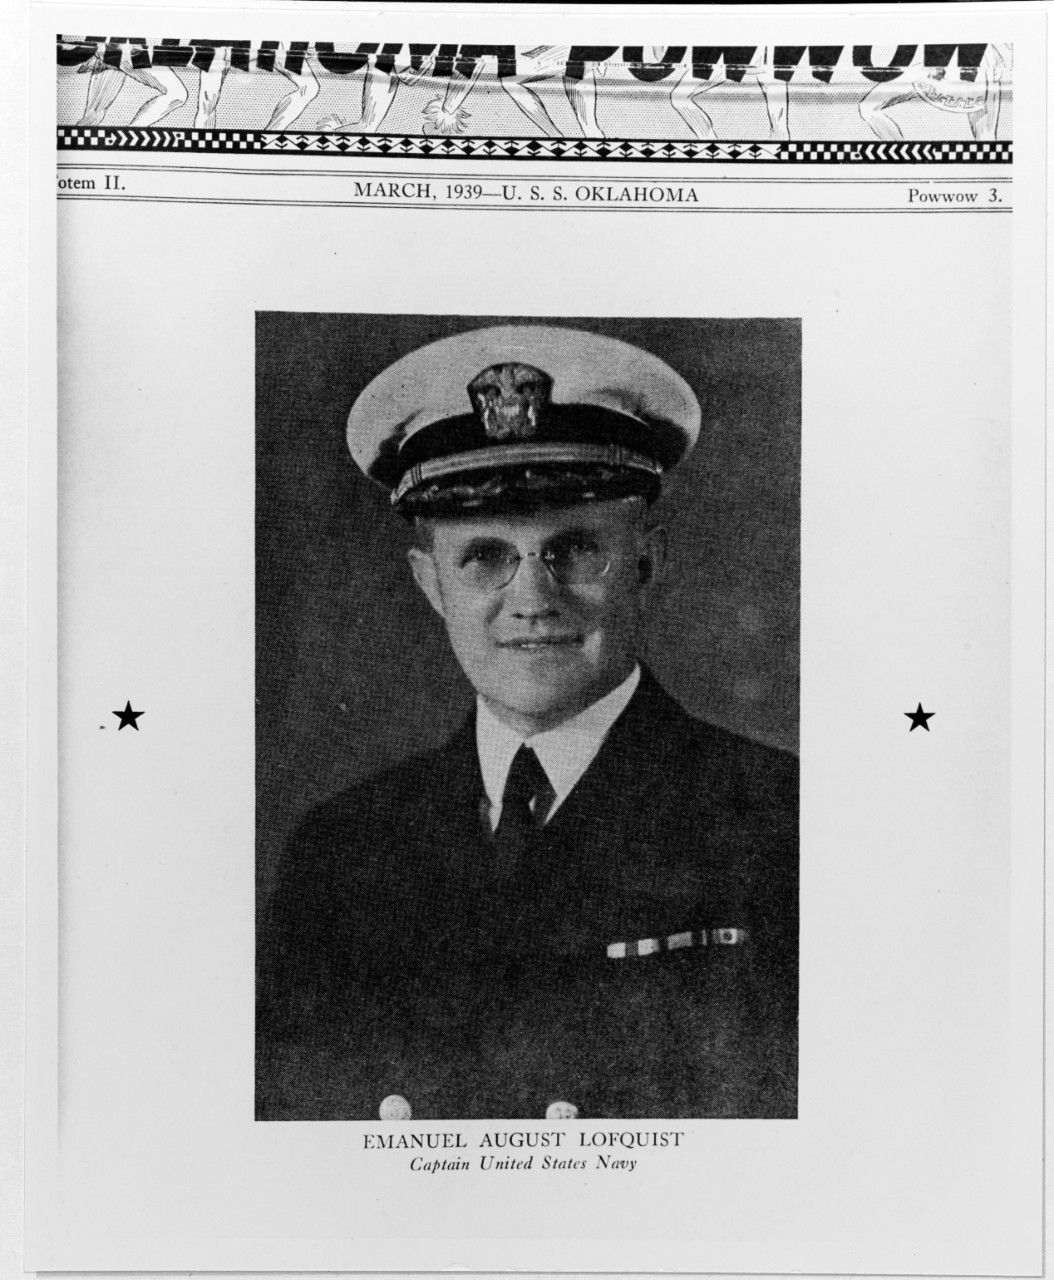 Emanuel August Lofquist, Captain, USN